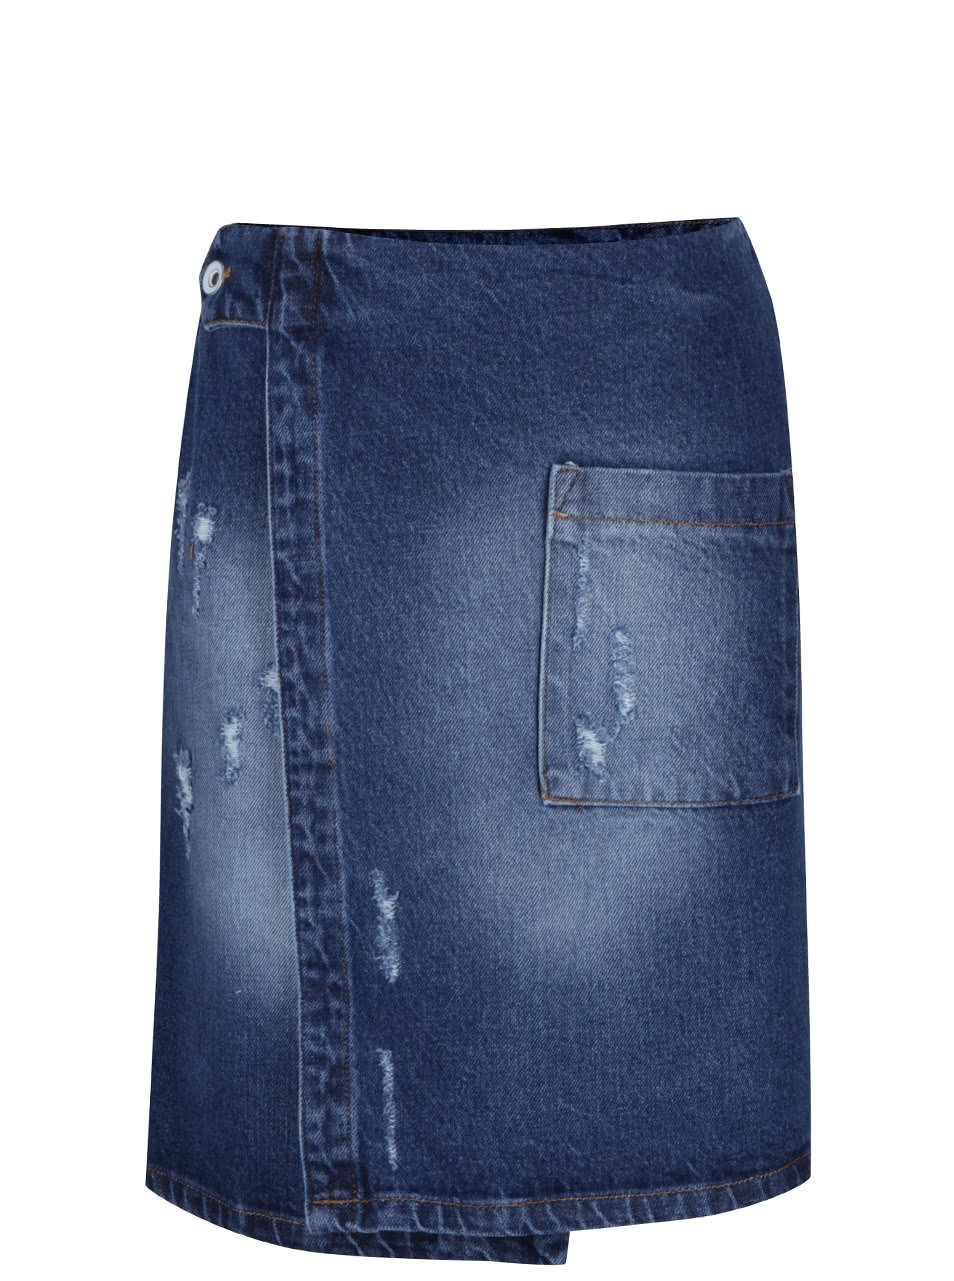 Modrá džínová zavinovací sukně s kapsou Alchymi Zane